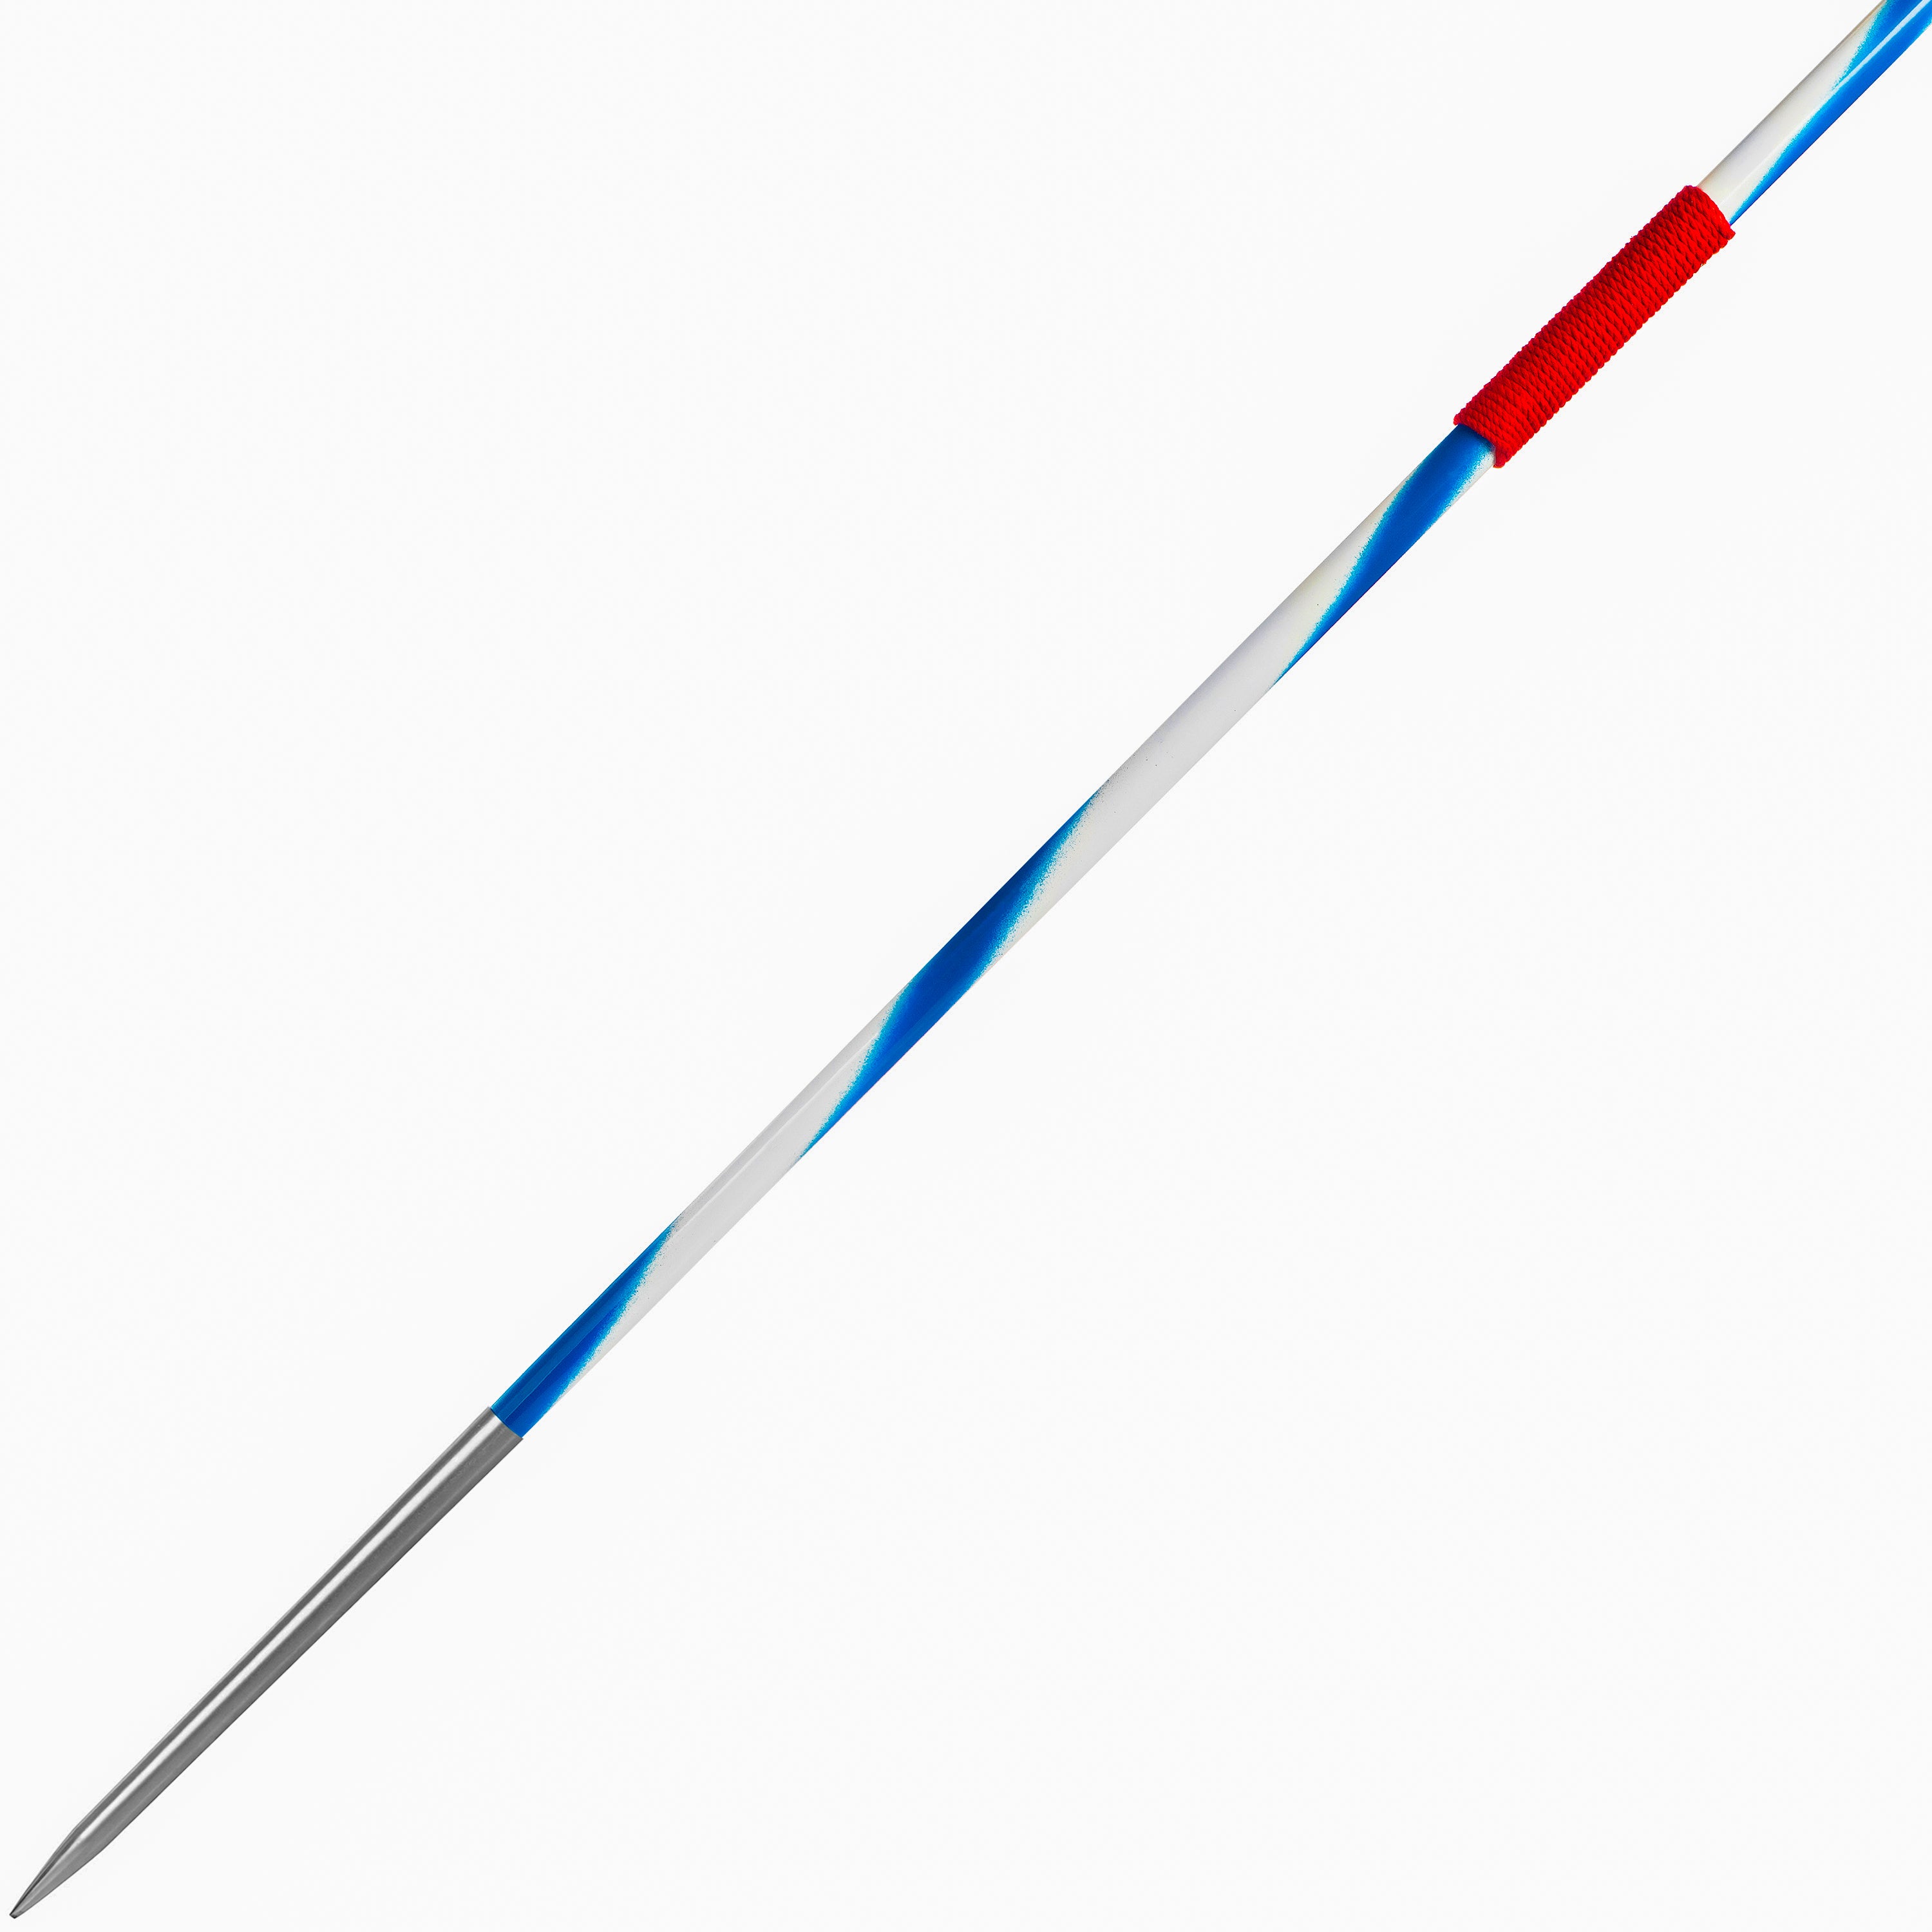 4Throws 600 Gram Training Javelin  - Steel Tip